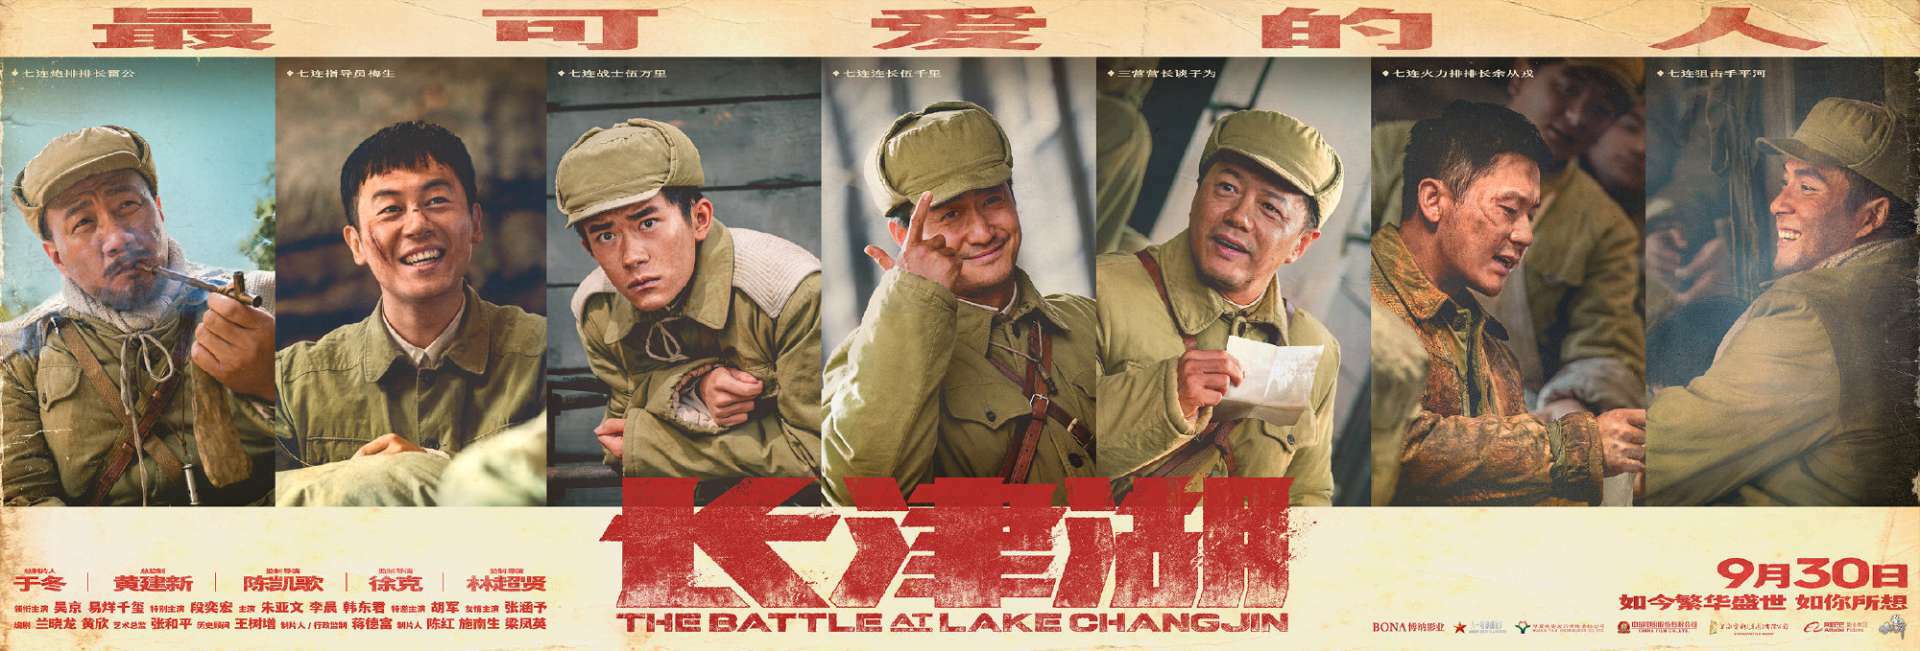 电影《长津湖》正式宣布定档9月30日 全新海报释出